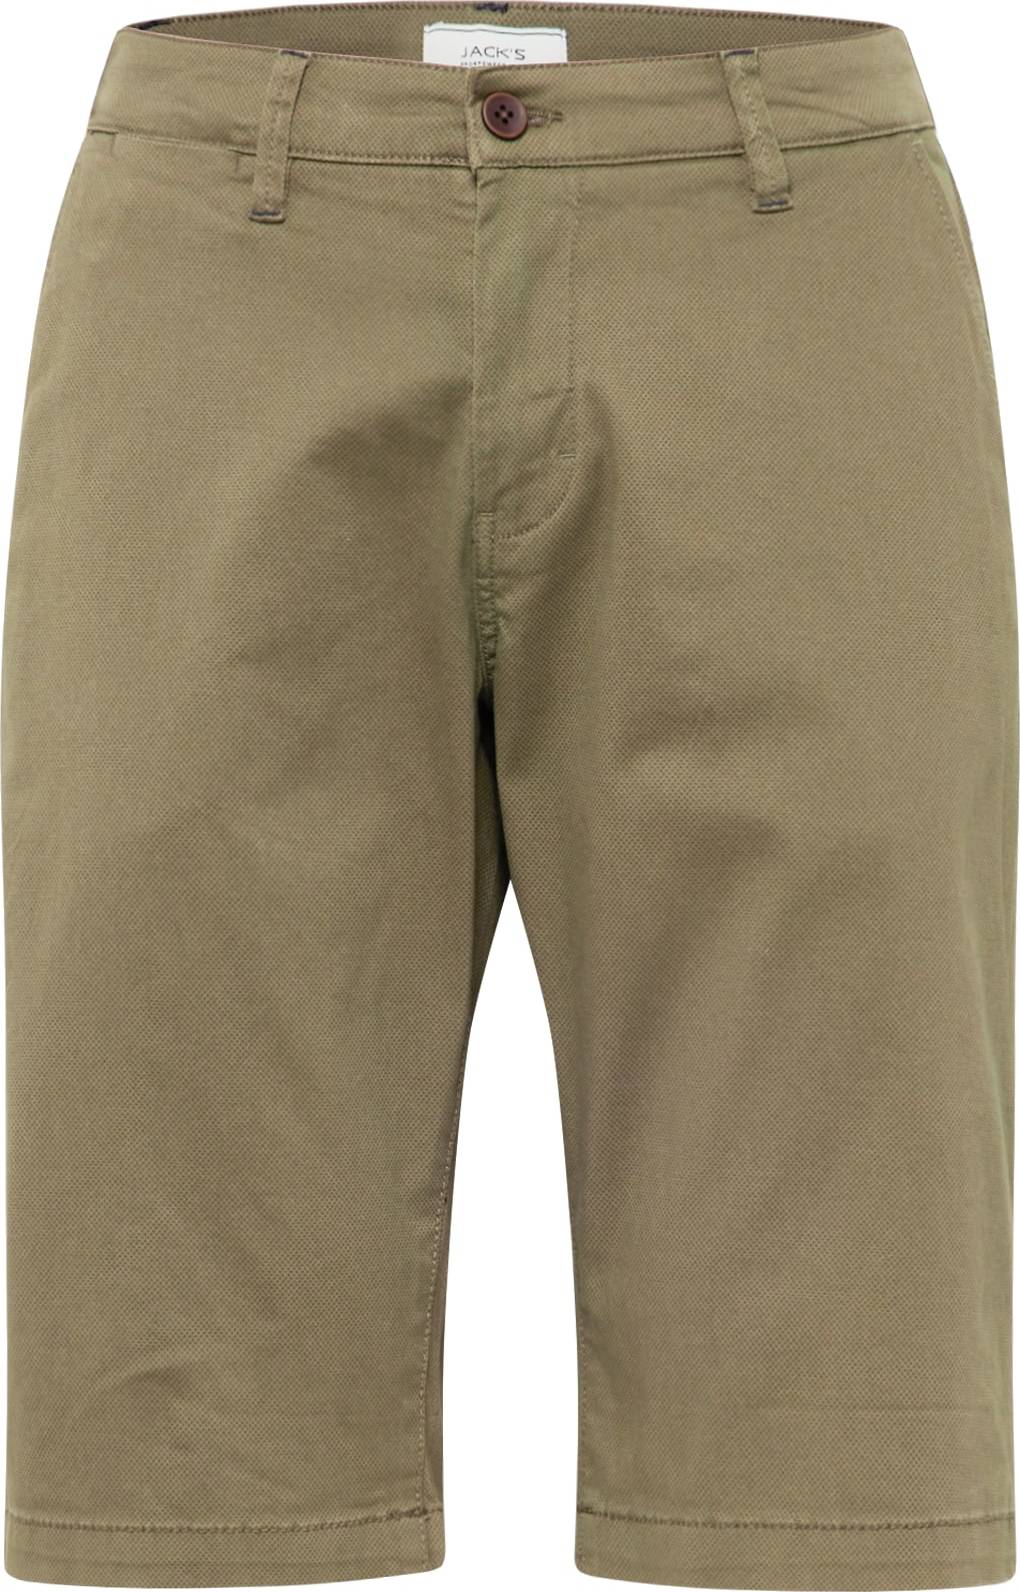 Chino kalhoty Jack's khaki